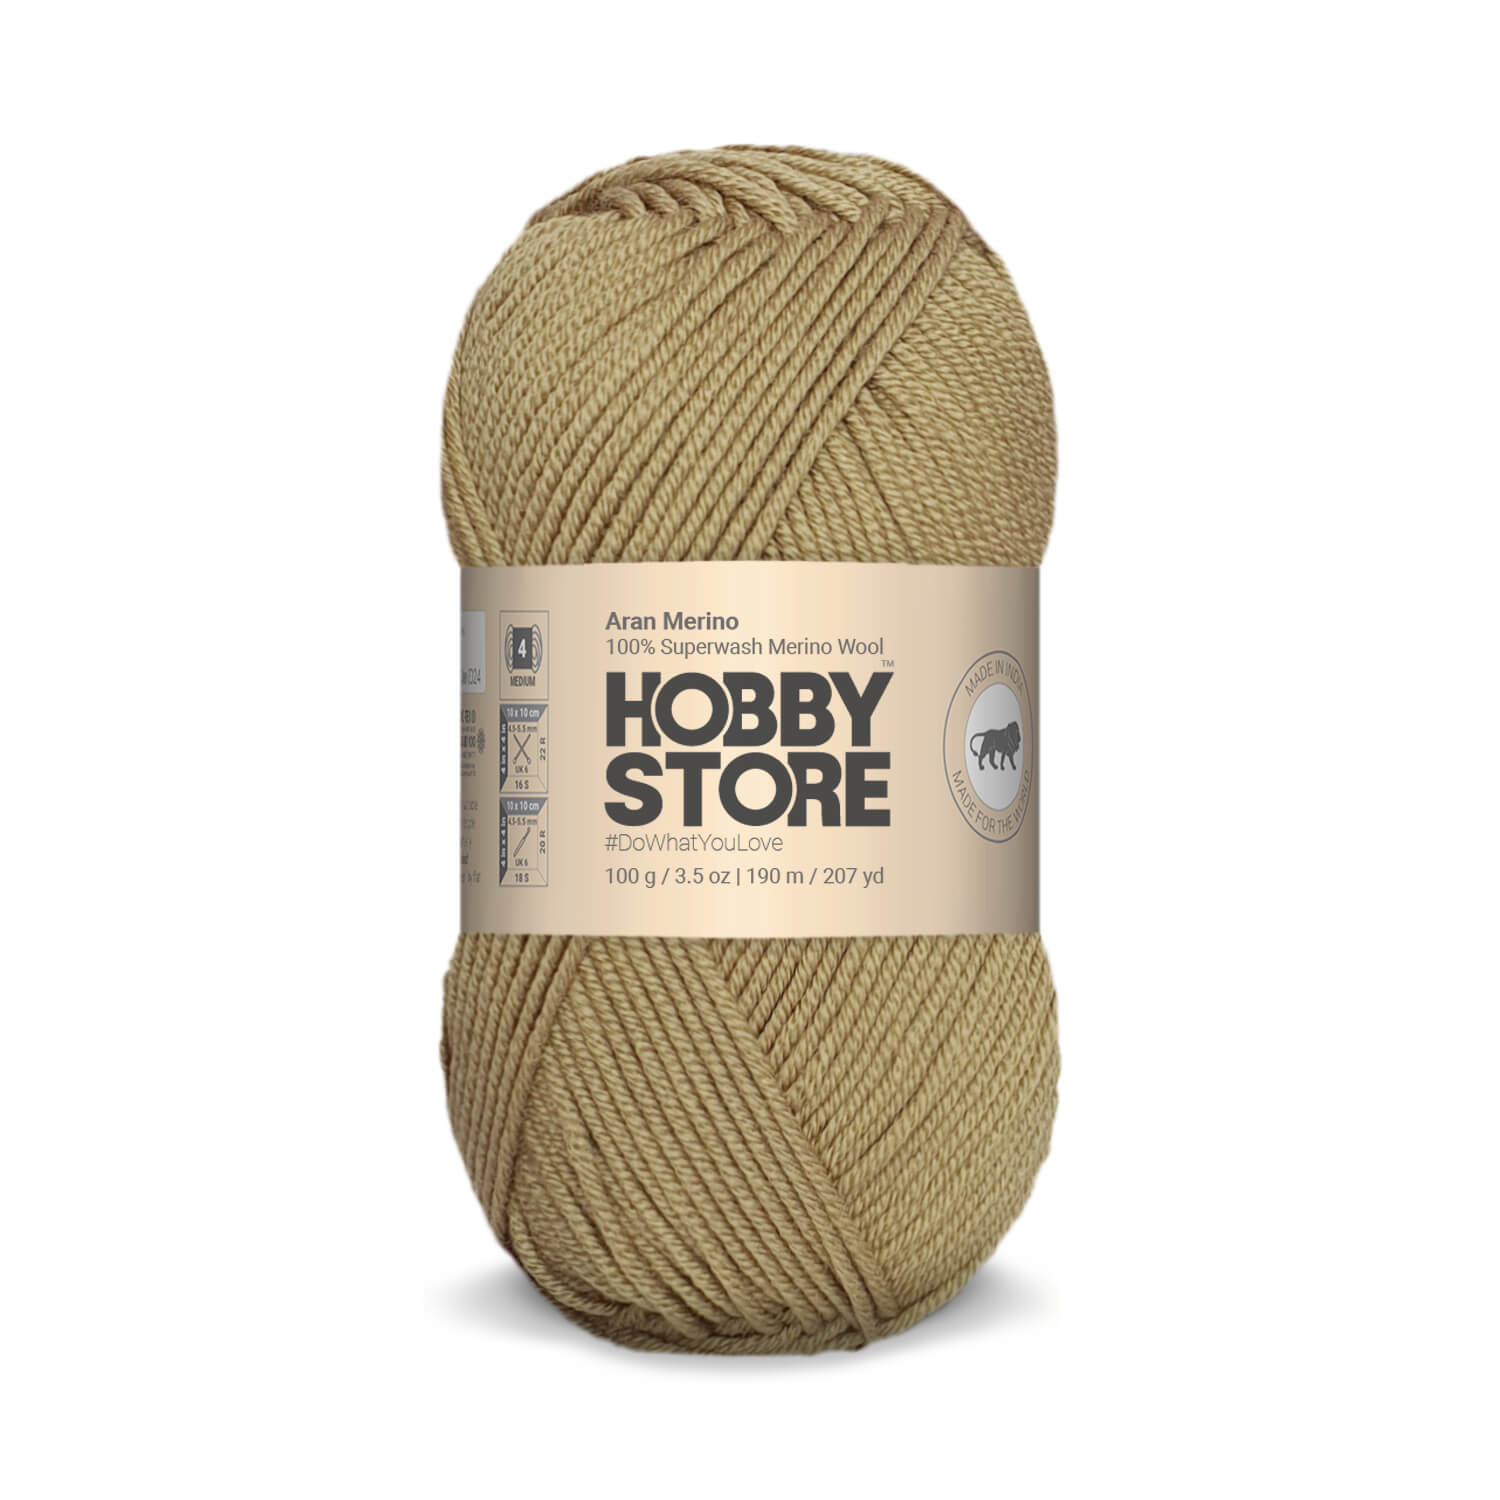 Aran Merino Wool by Hobby Store - Khaki AM001